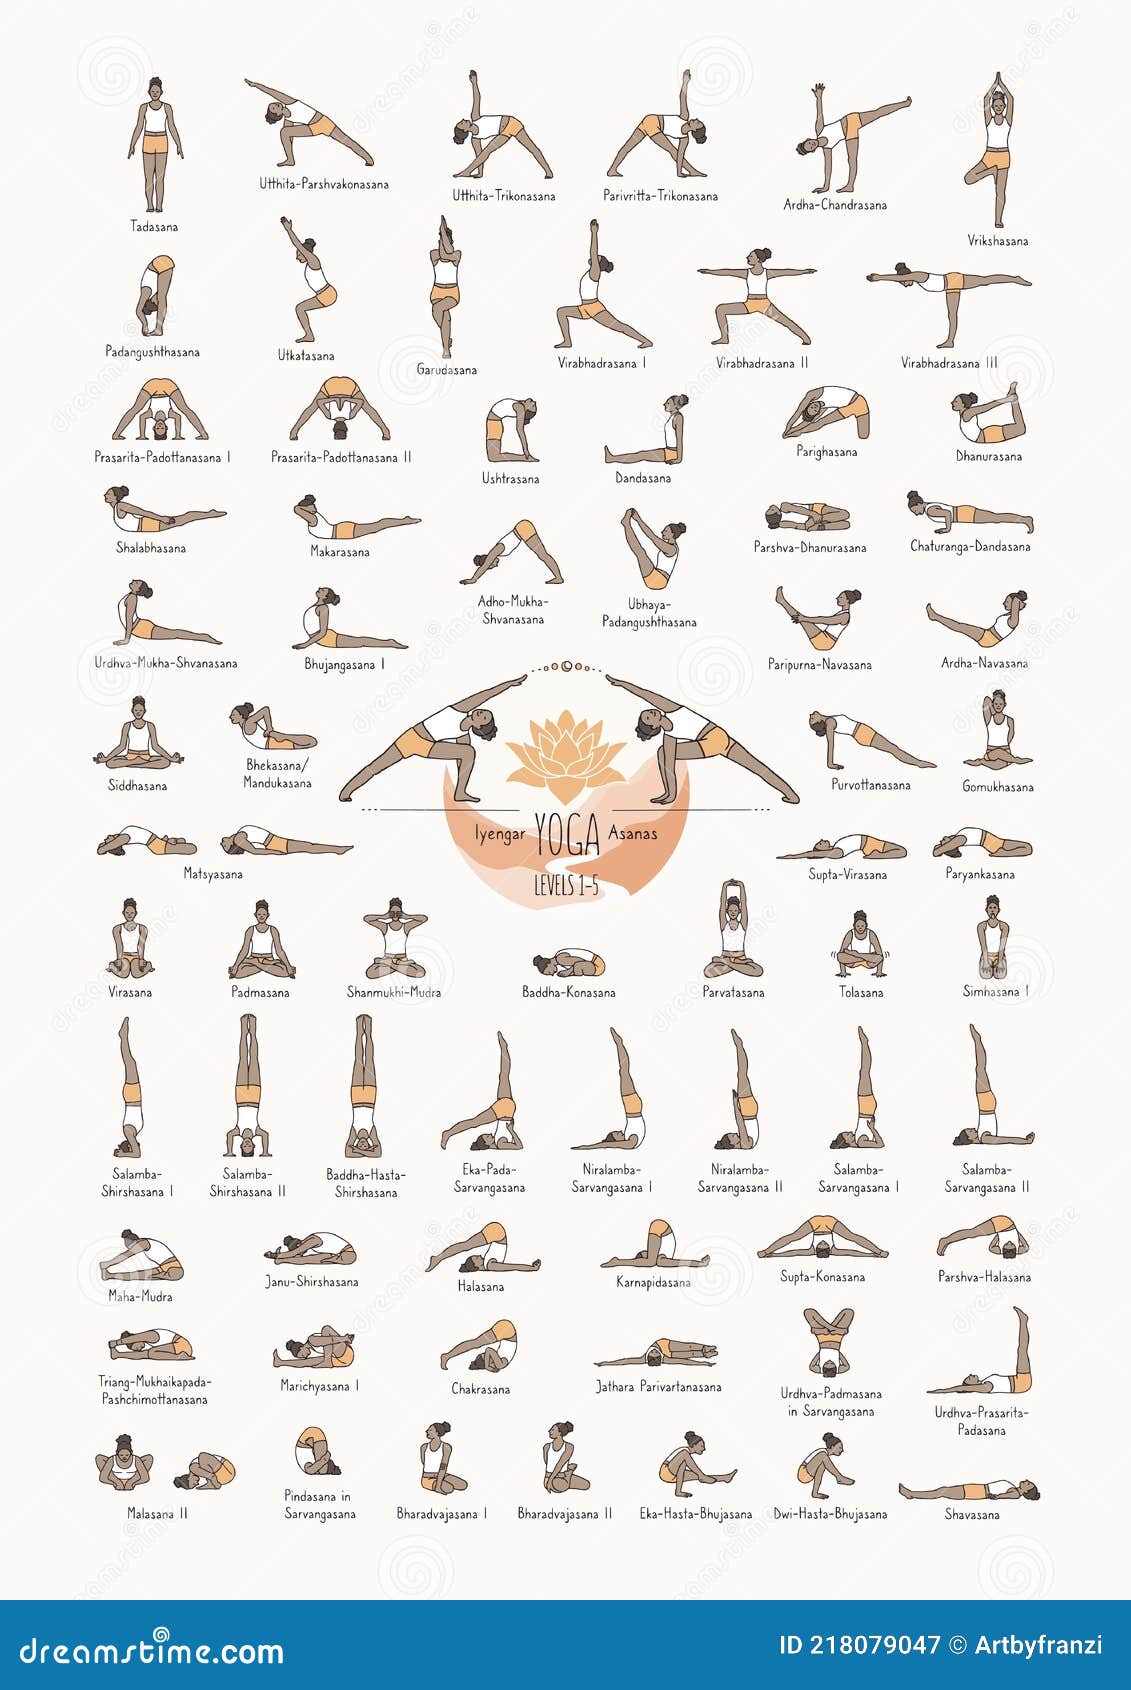 TOP 30 Yoga Poses In Sanskrit EXPLAINED  YouTube